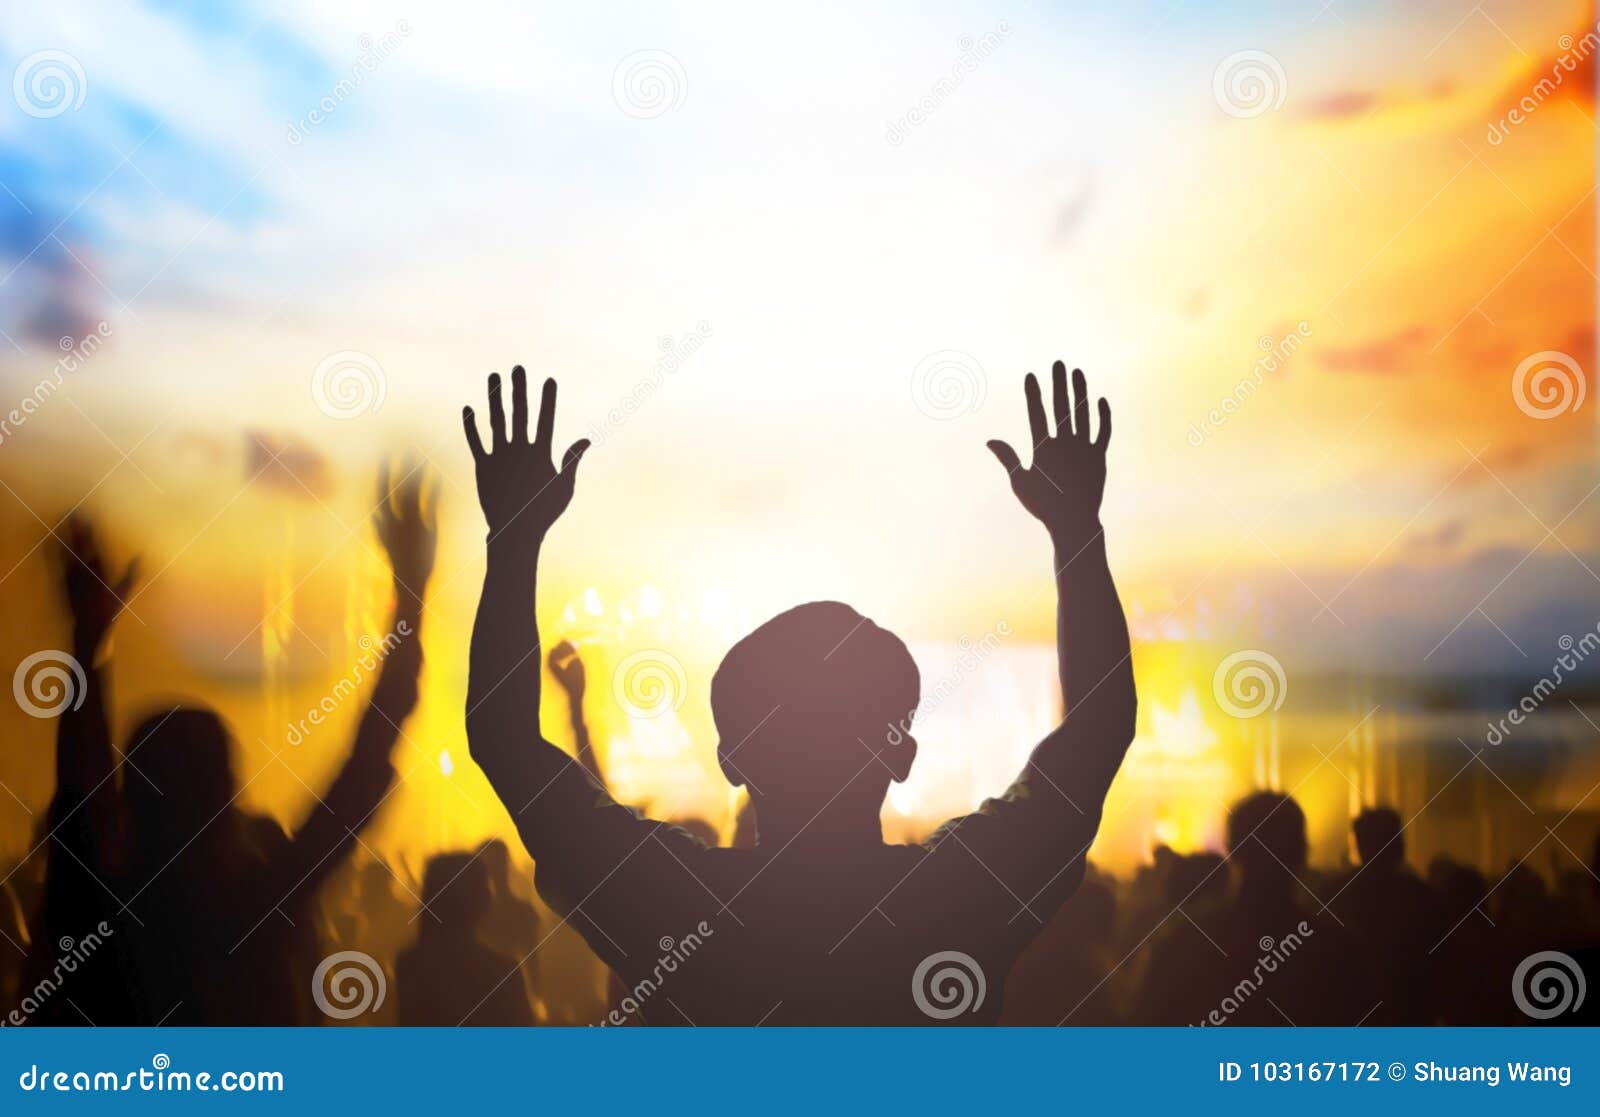 Buổi hòa nhạc Thiên Chúa: Buổi hòa nhạc Thiên Chúa là sự kiện không thể bỏ lỡ đối với những ai yêu thích âm nhạc và niềm tin vào Thiên Chúa. Với những bản nhạc tuyệt vời và giọng hát đầy cảm xúc, buổi hòa nhạc này chắc chắn sẽ mang lại những trải nghiệm tuyệt vời nhất cho bạn. Hãy đến và khám phá buổi hòa nhạc Thiên Chúa ngay bây giờ!